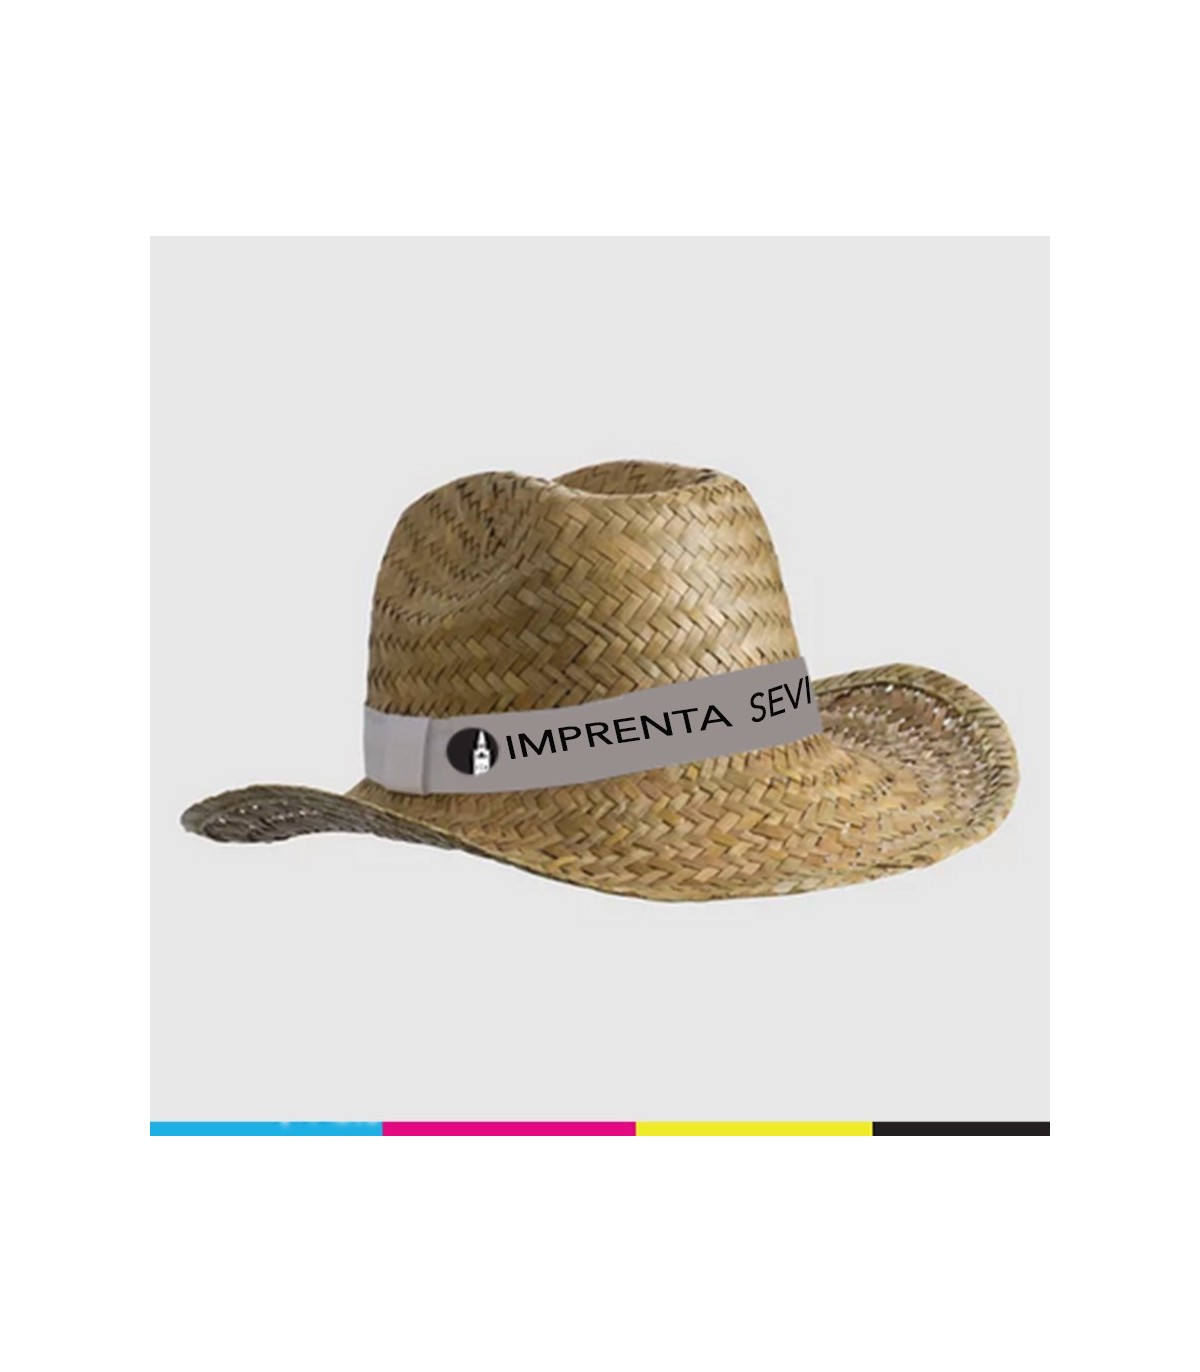 Sombrero de Paja con Cinta de Color para Publicidad